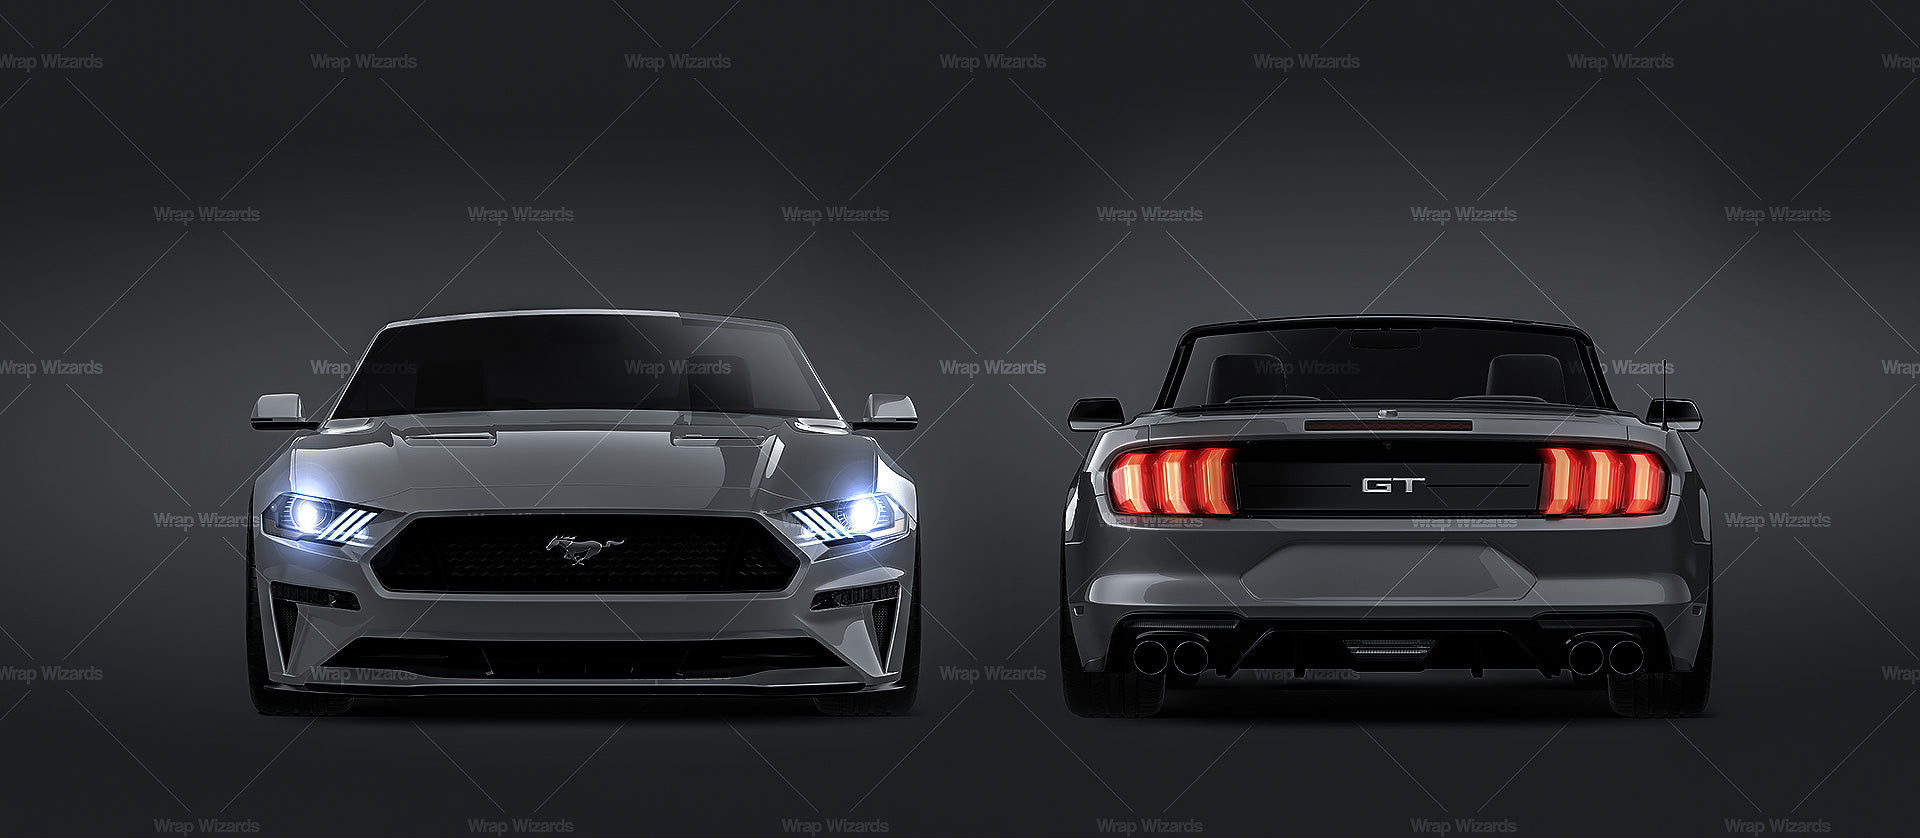 Ford Mustang GT 2018 Convertible - Car Mockup